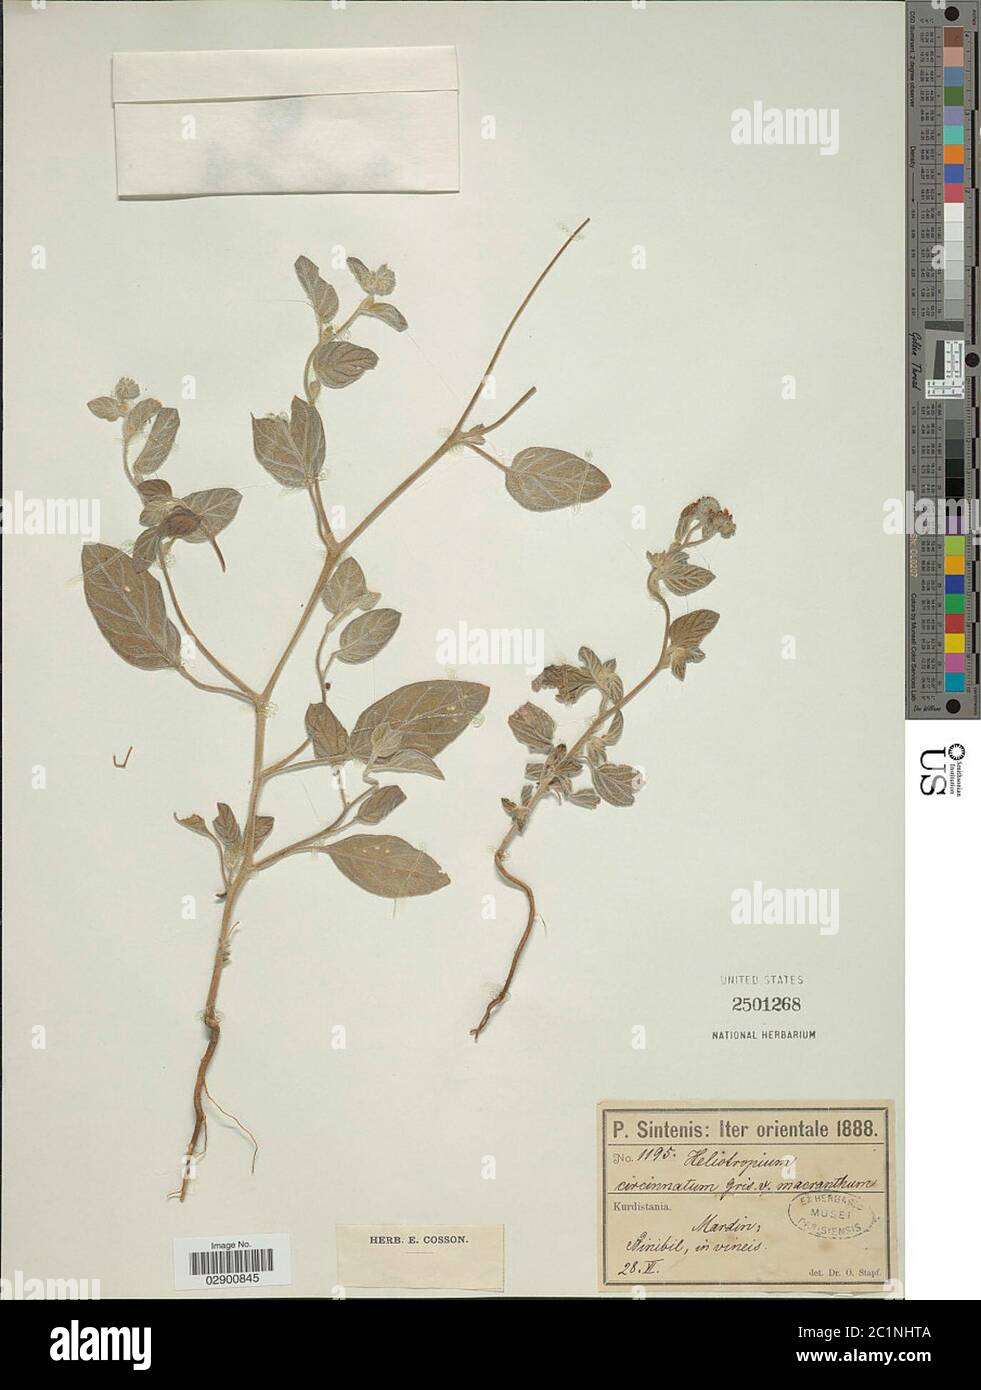 Heliotropium circinatum Griseb Heliotropium circinatum Griseb. Stock Photo